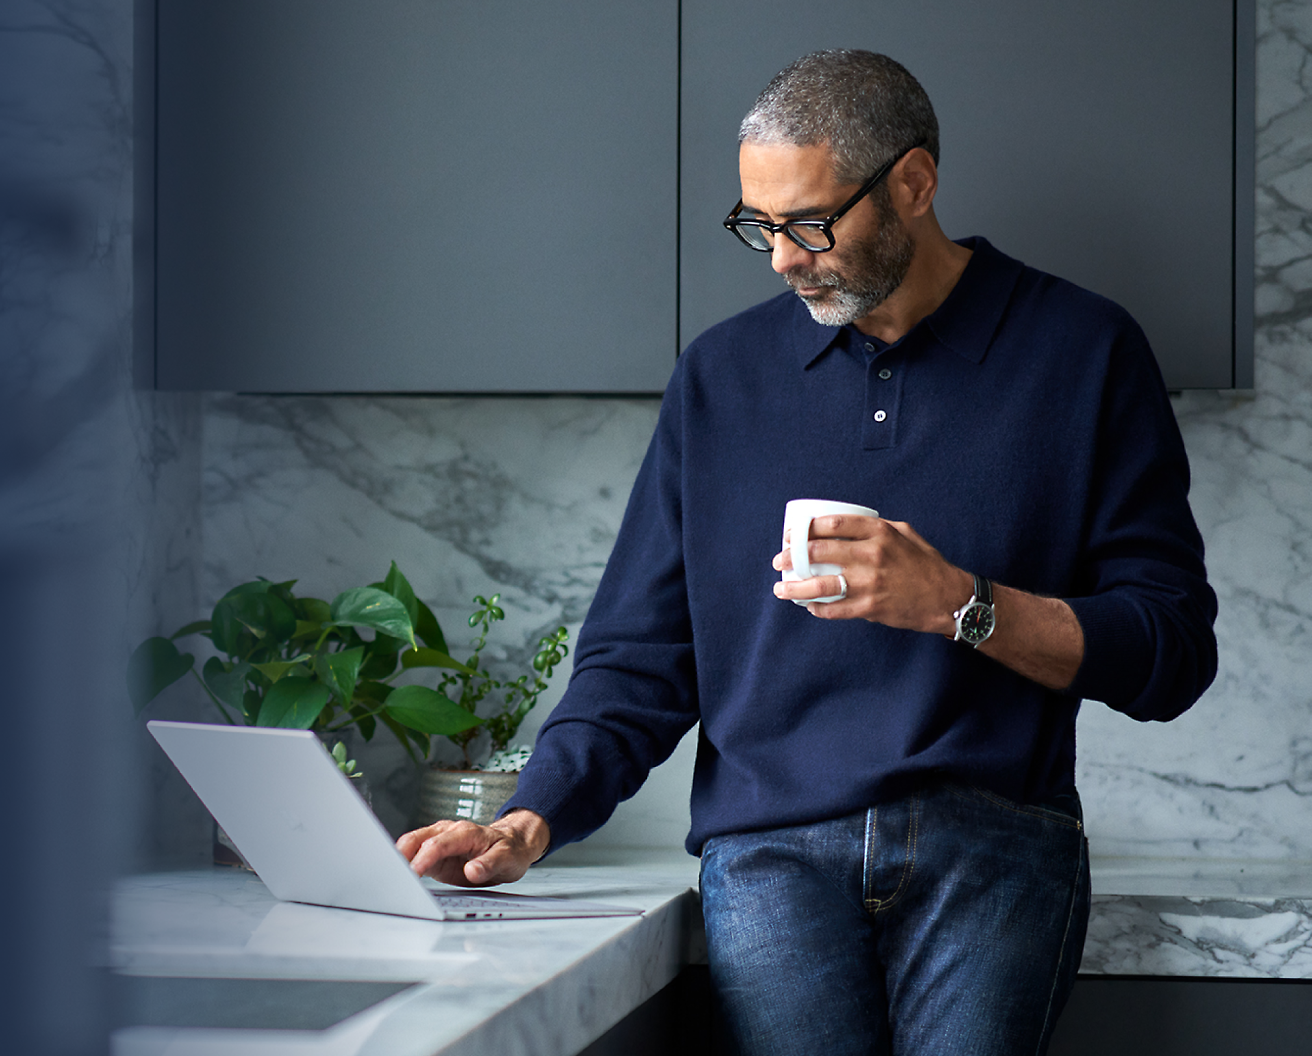 Uomo con gli occhiali che tiene in mano una tazza di caffè e usa un computer portatile in una cucina moderna.